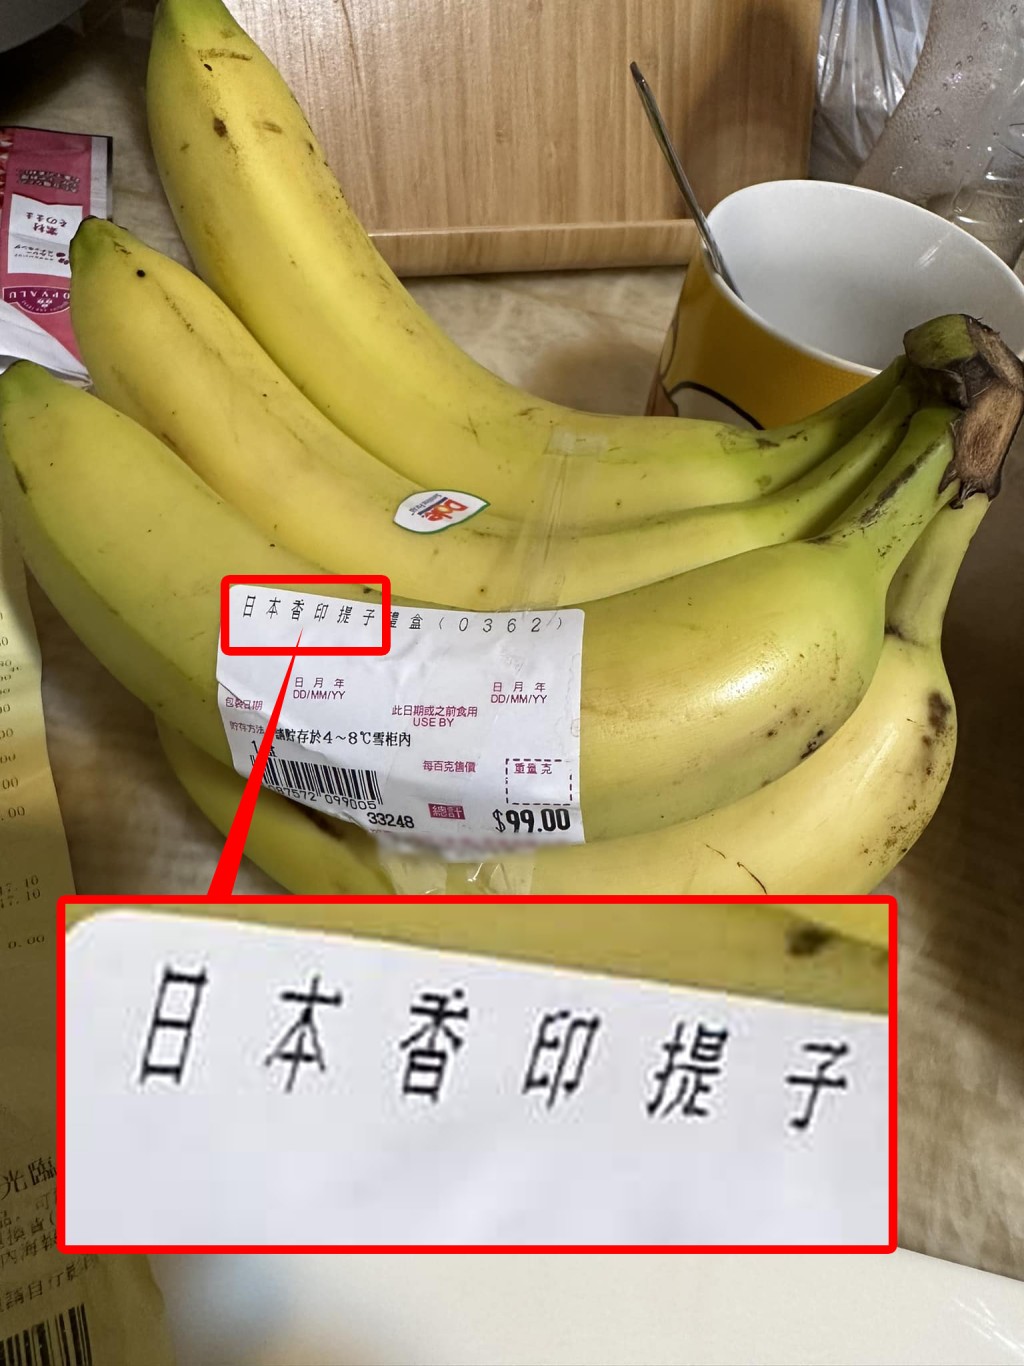 香蕉的价钱标签上印有「日本香印提子」字眼。